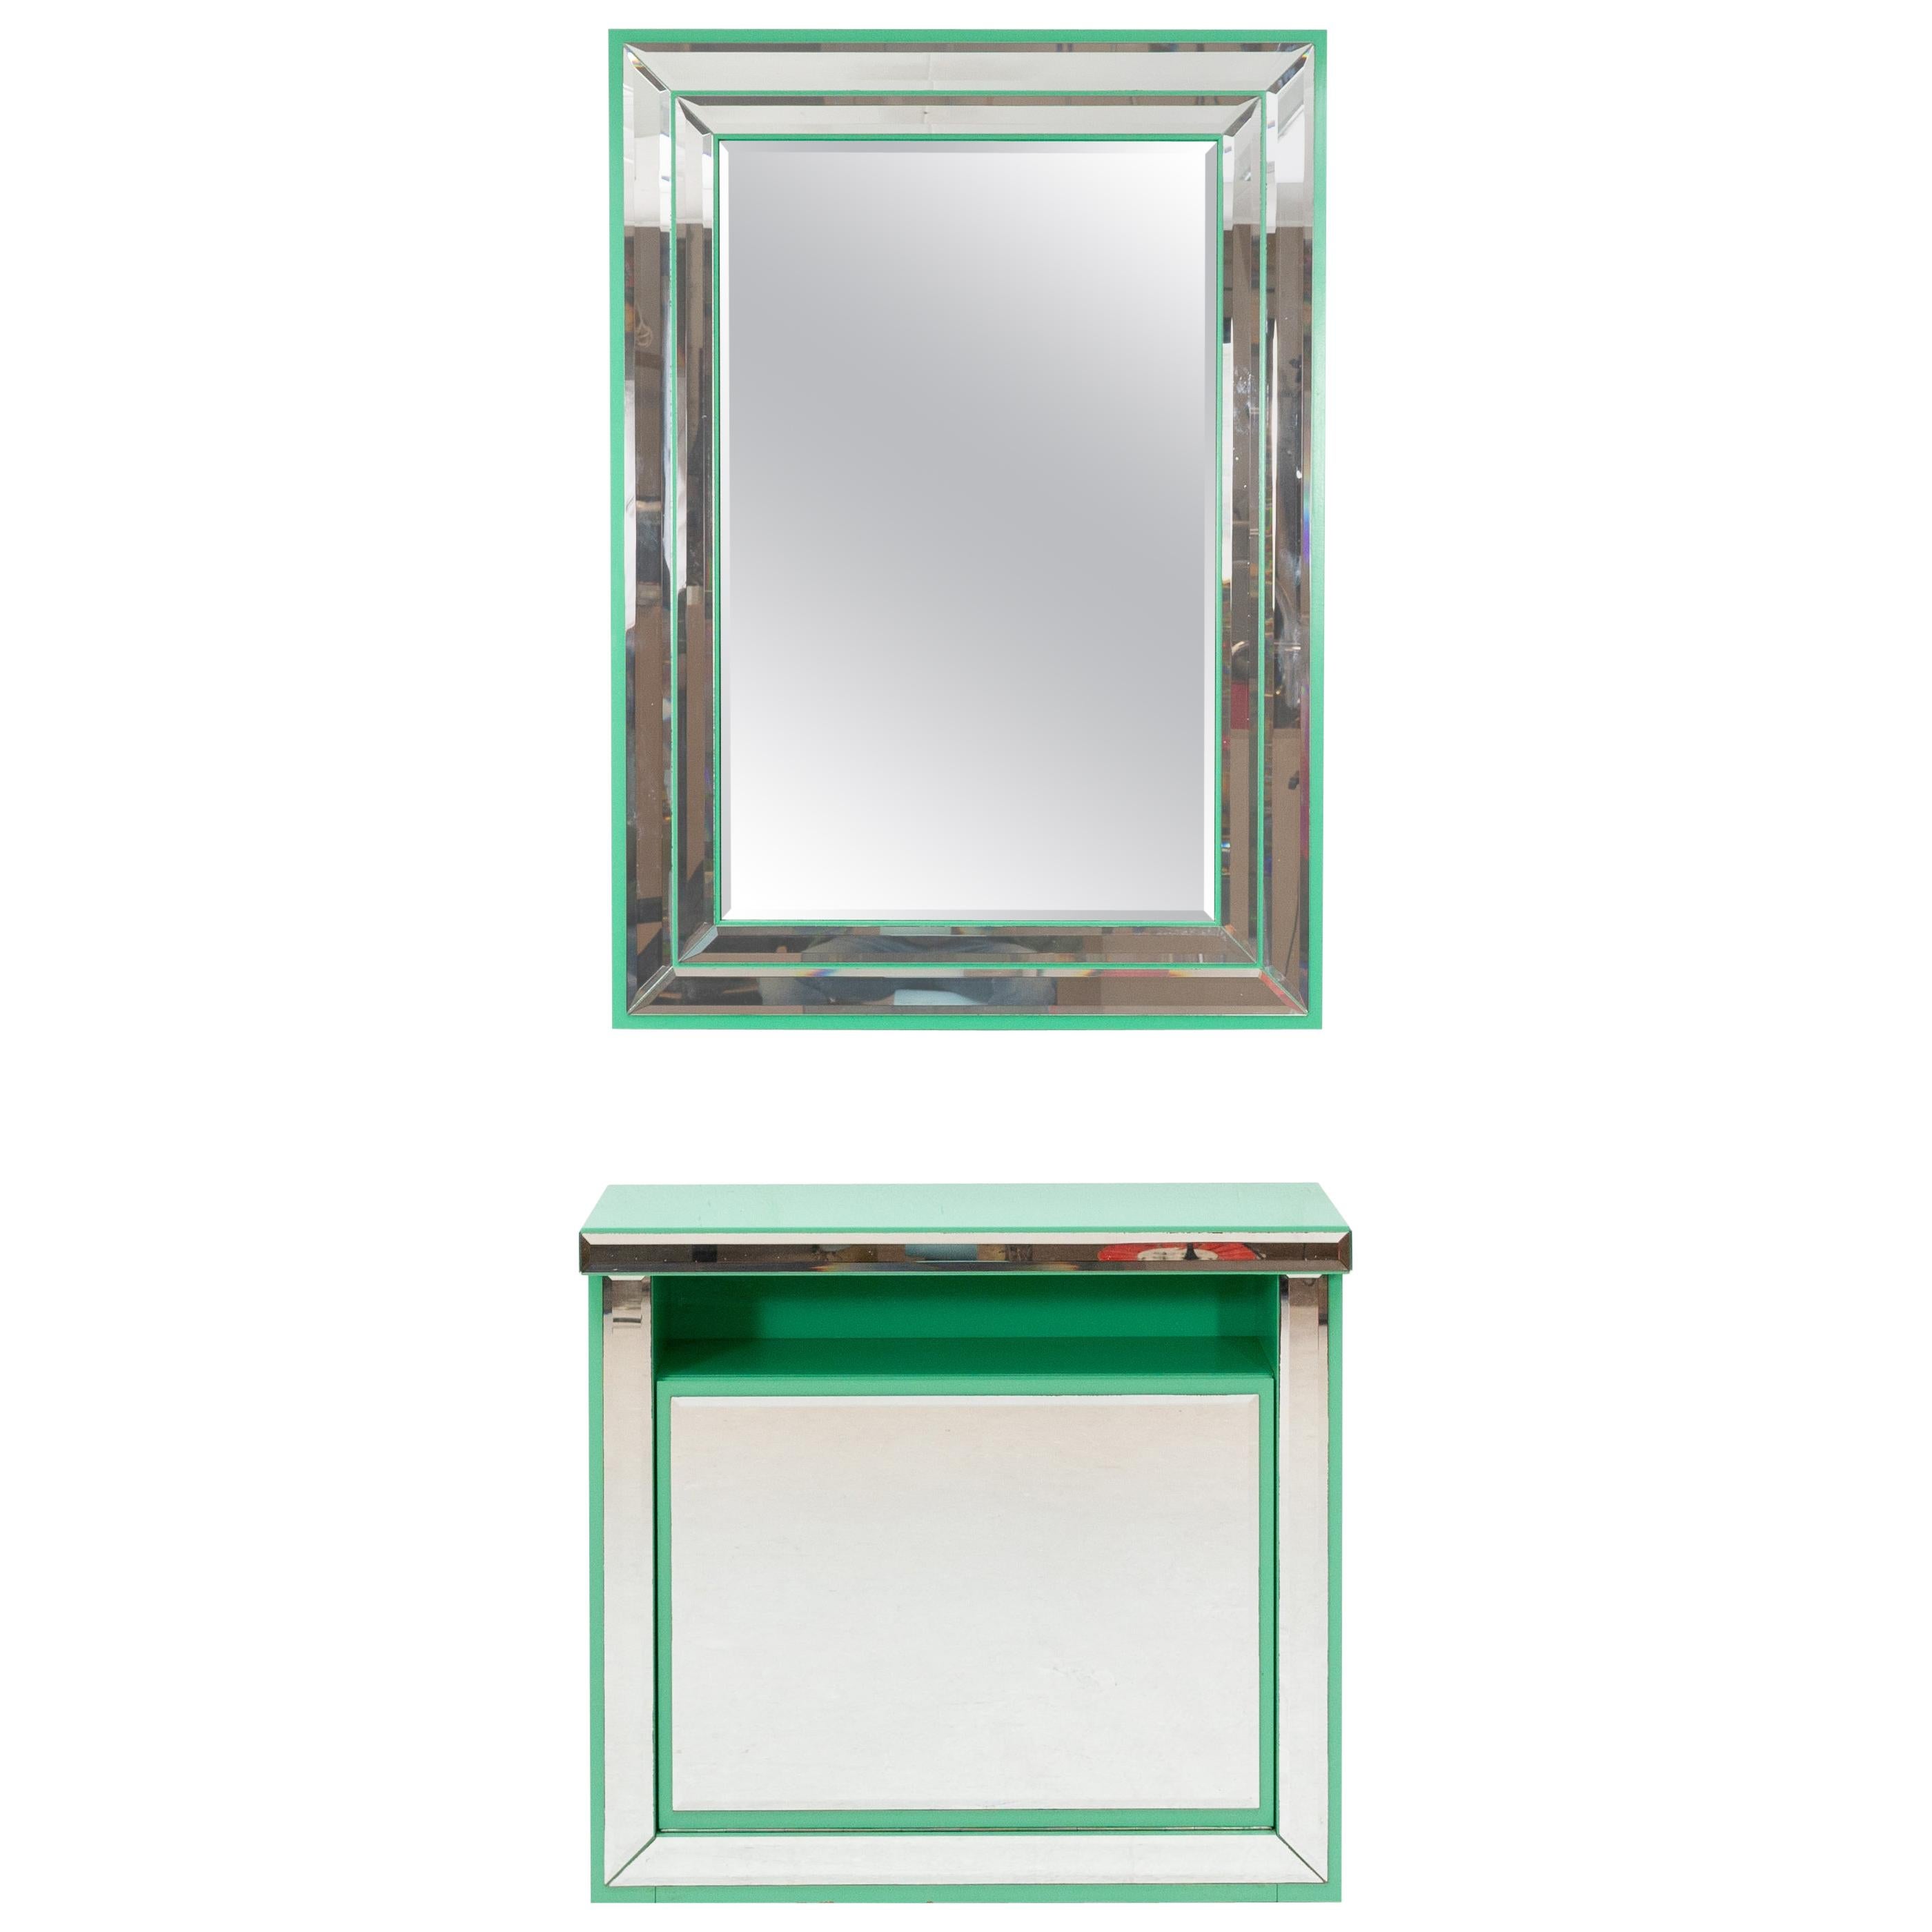 Schöninger Mint Green Console Mirror Hollywood Regency